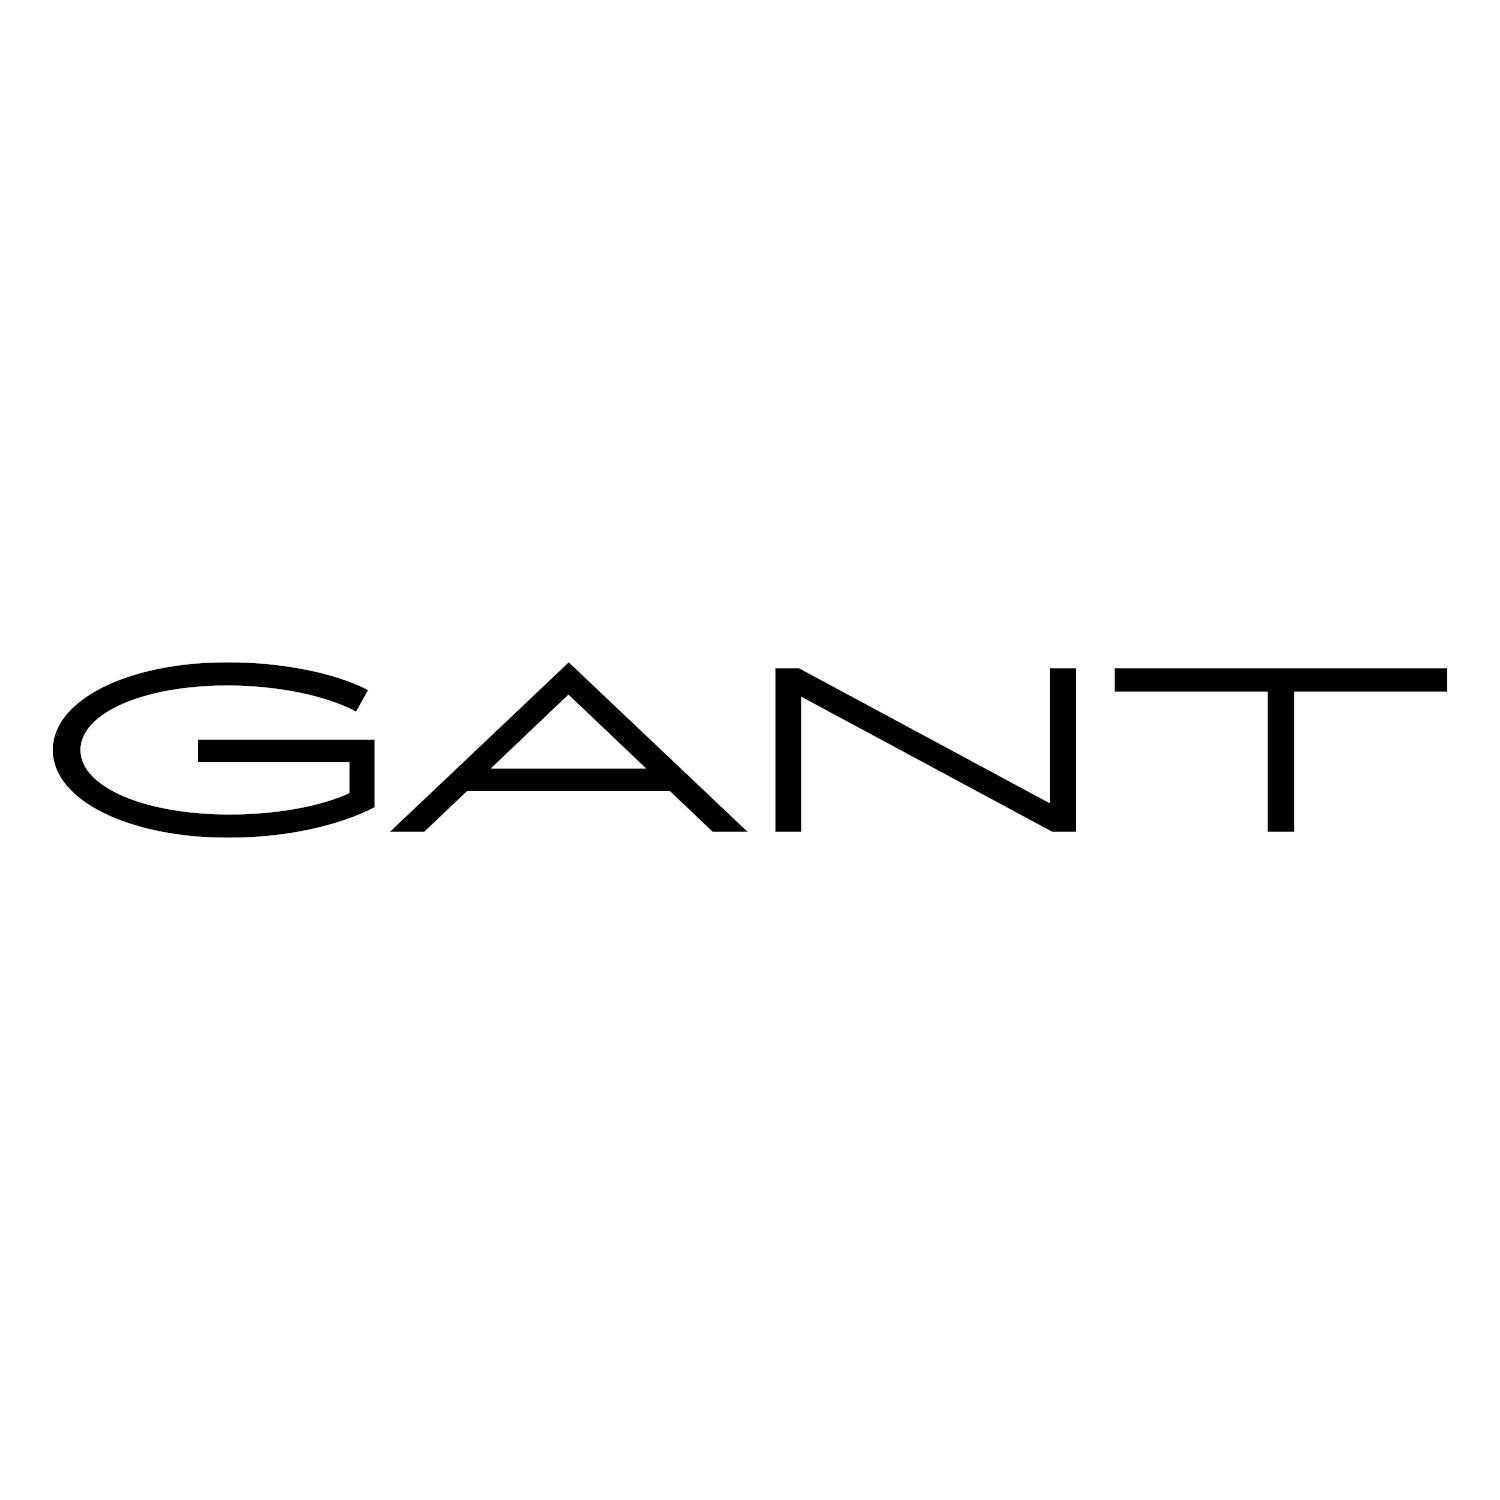 GANT Köln in Köln - Logo